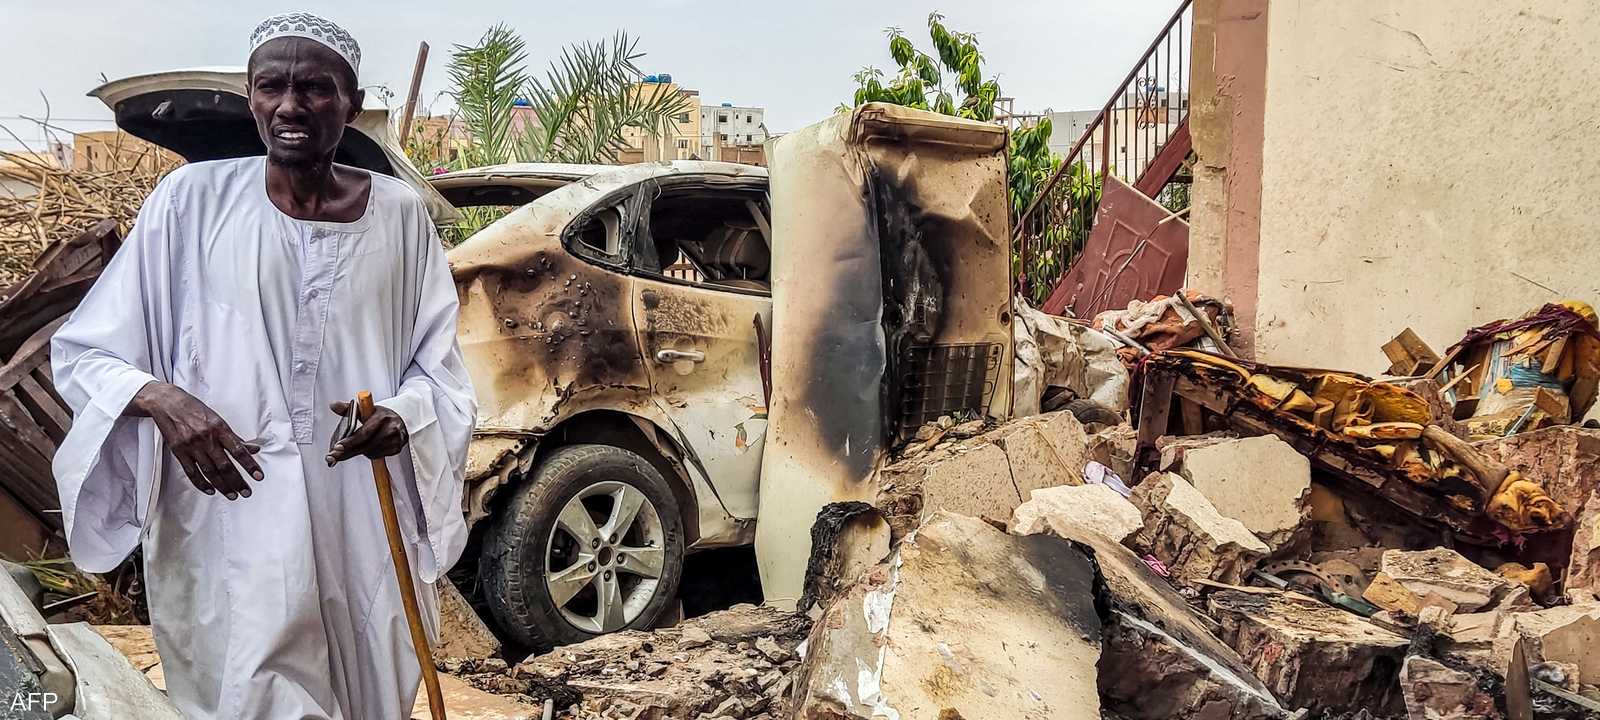 تسببت الحرب في السودان بدمار هائل